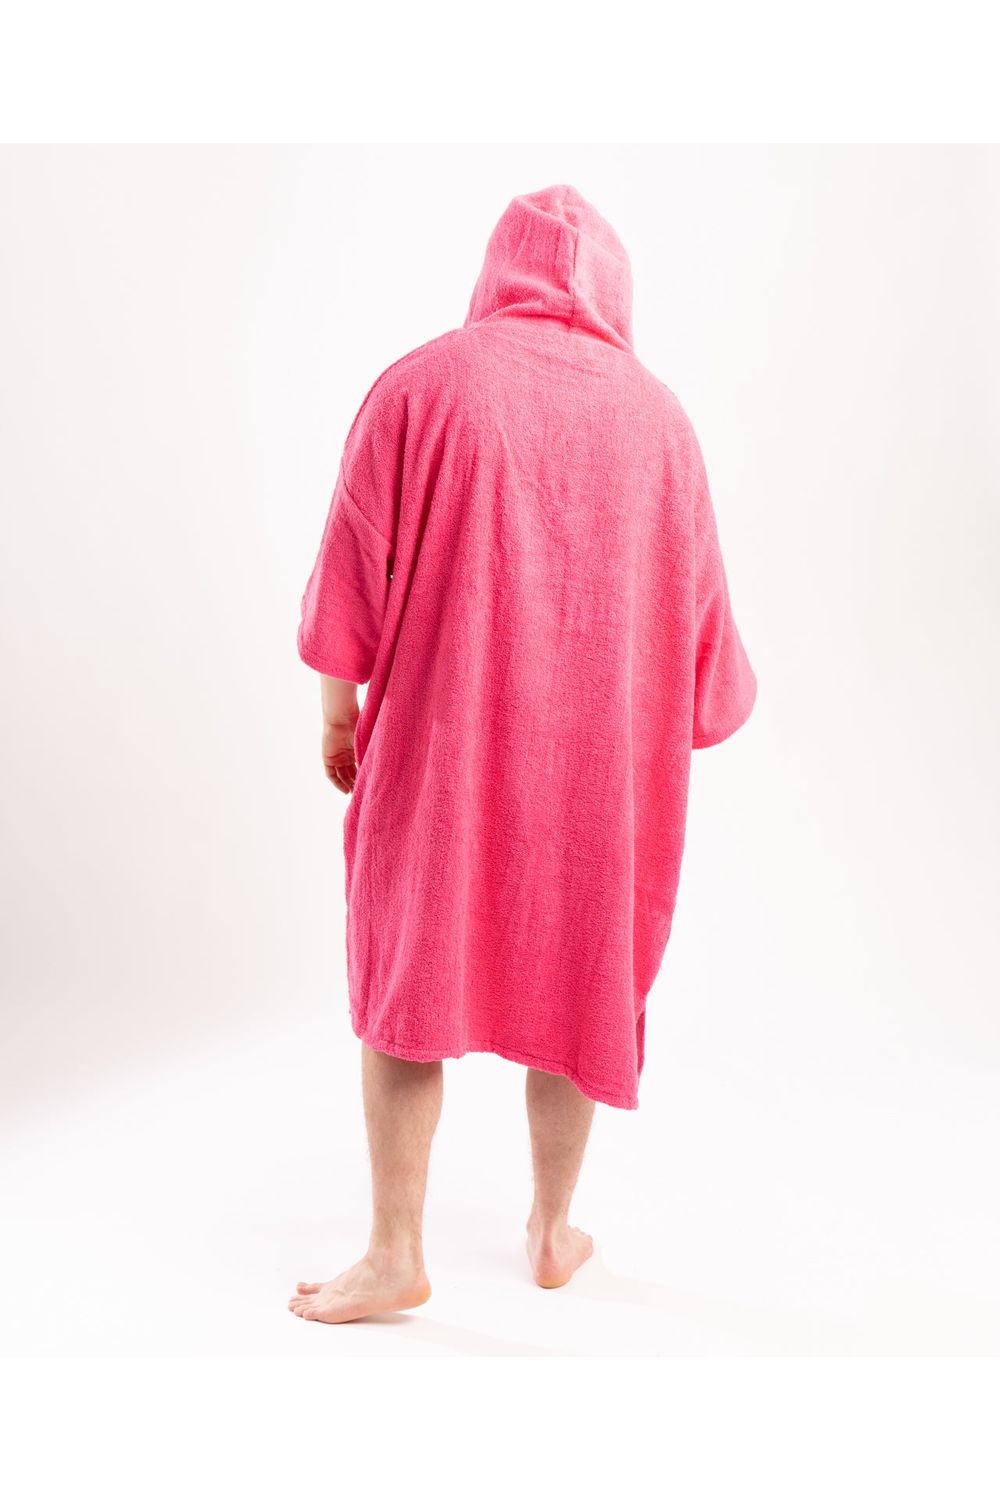 Tiki Adults Hooded Change Robe Pink